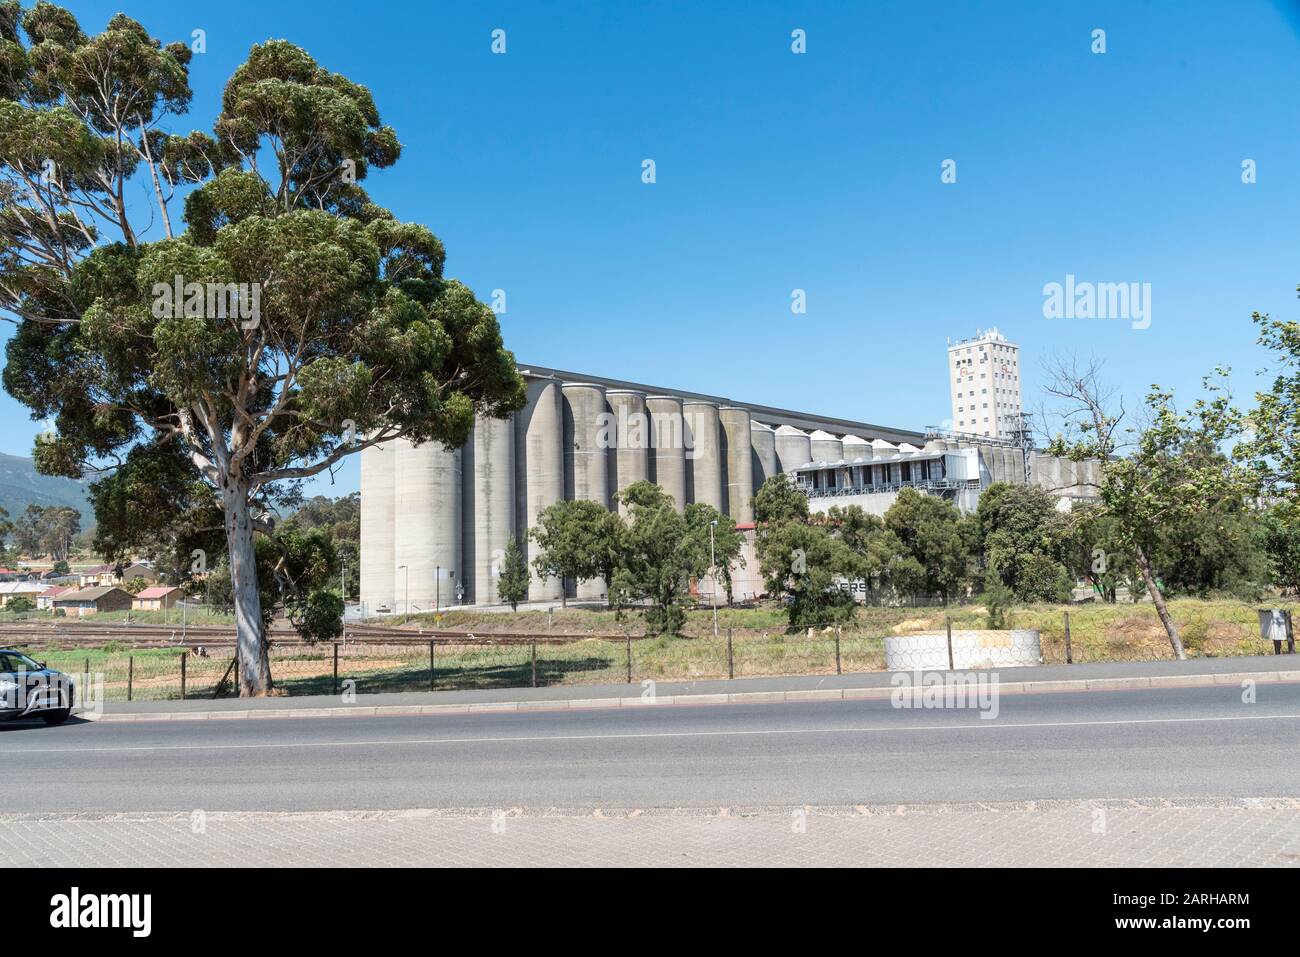 Caledon, Western Cape, Afrique Du Sud. Déc 2019. De grands silos à grains de béton situés à la périphérie de cette ville, dans la région d'Overberg. Banque D'Images